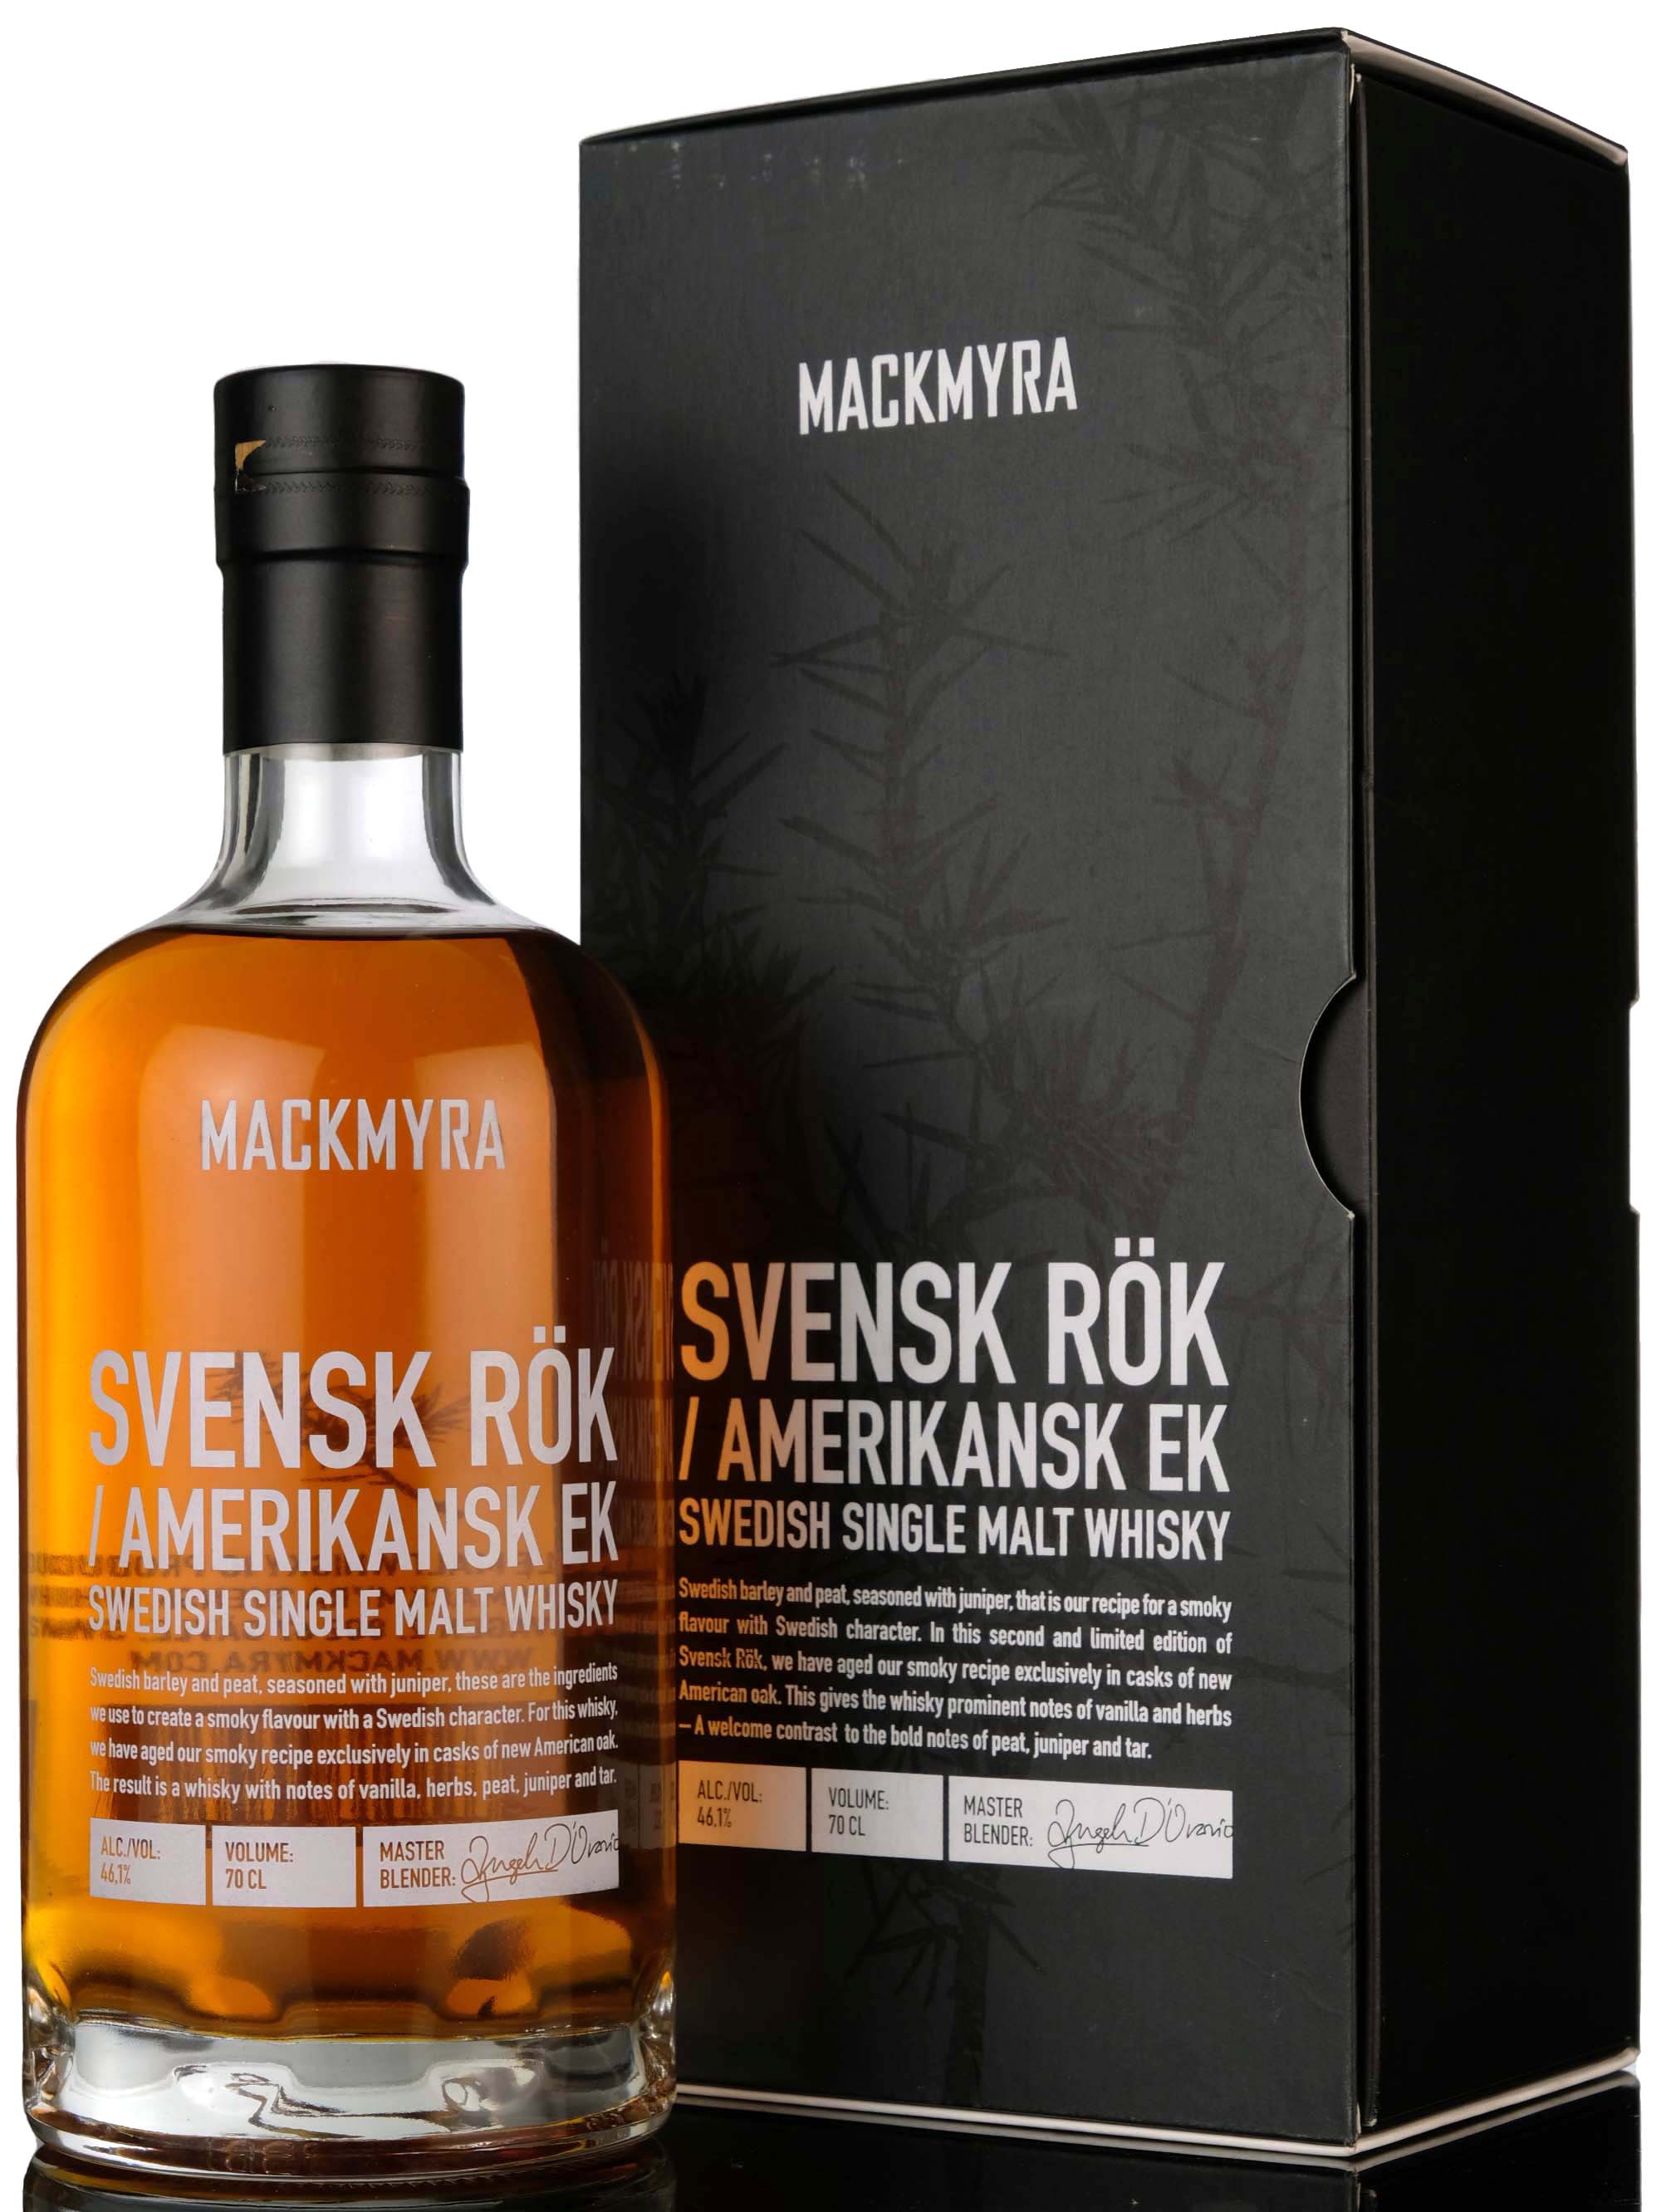 Mackmyra Svensk Rök / Amerikansk Ek - 2017 Release